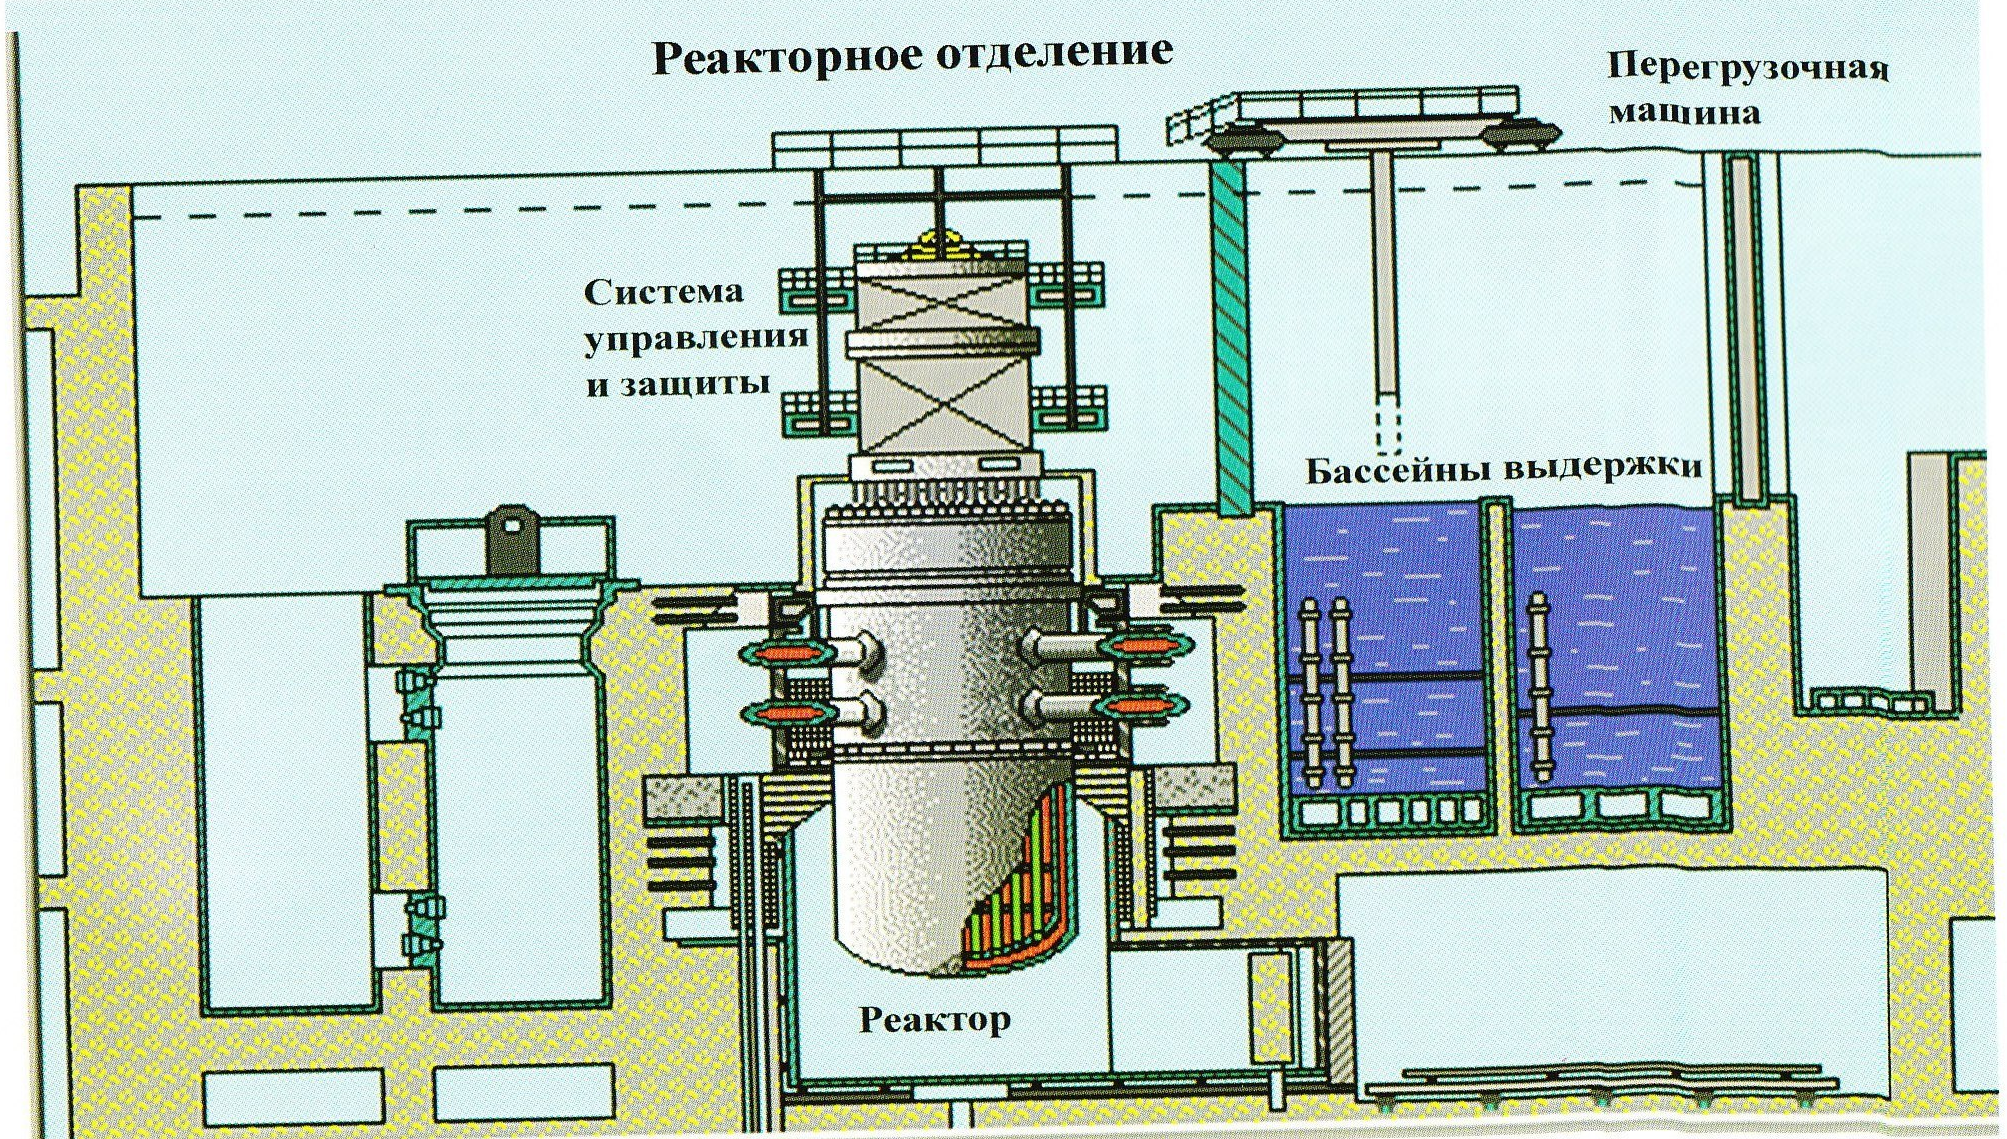 Реактор горючий. Ядерный реактор ВВЭР-1000. Перегрузочная машина ВВЭР-1200. Бассейн выдержки ВВЭР 1000. Перегрузочная машина реактора ВВЭР-1000.